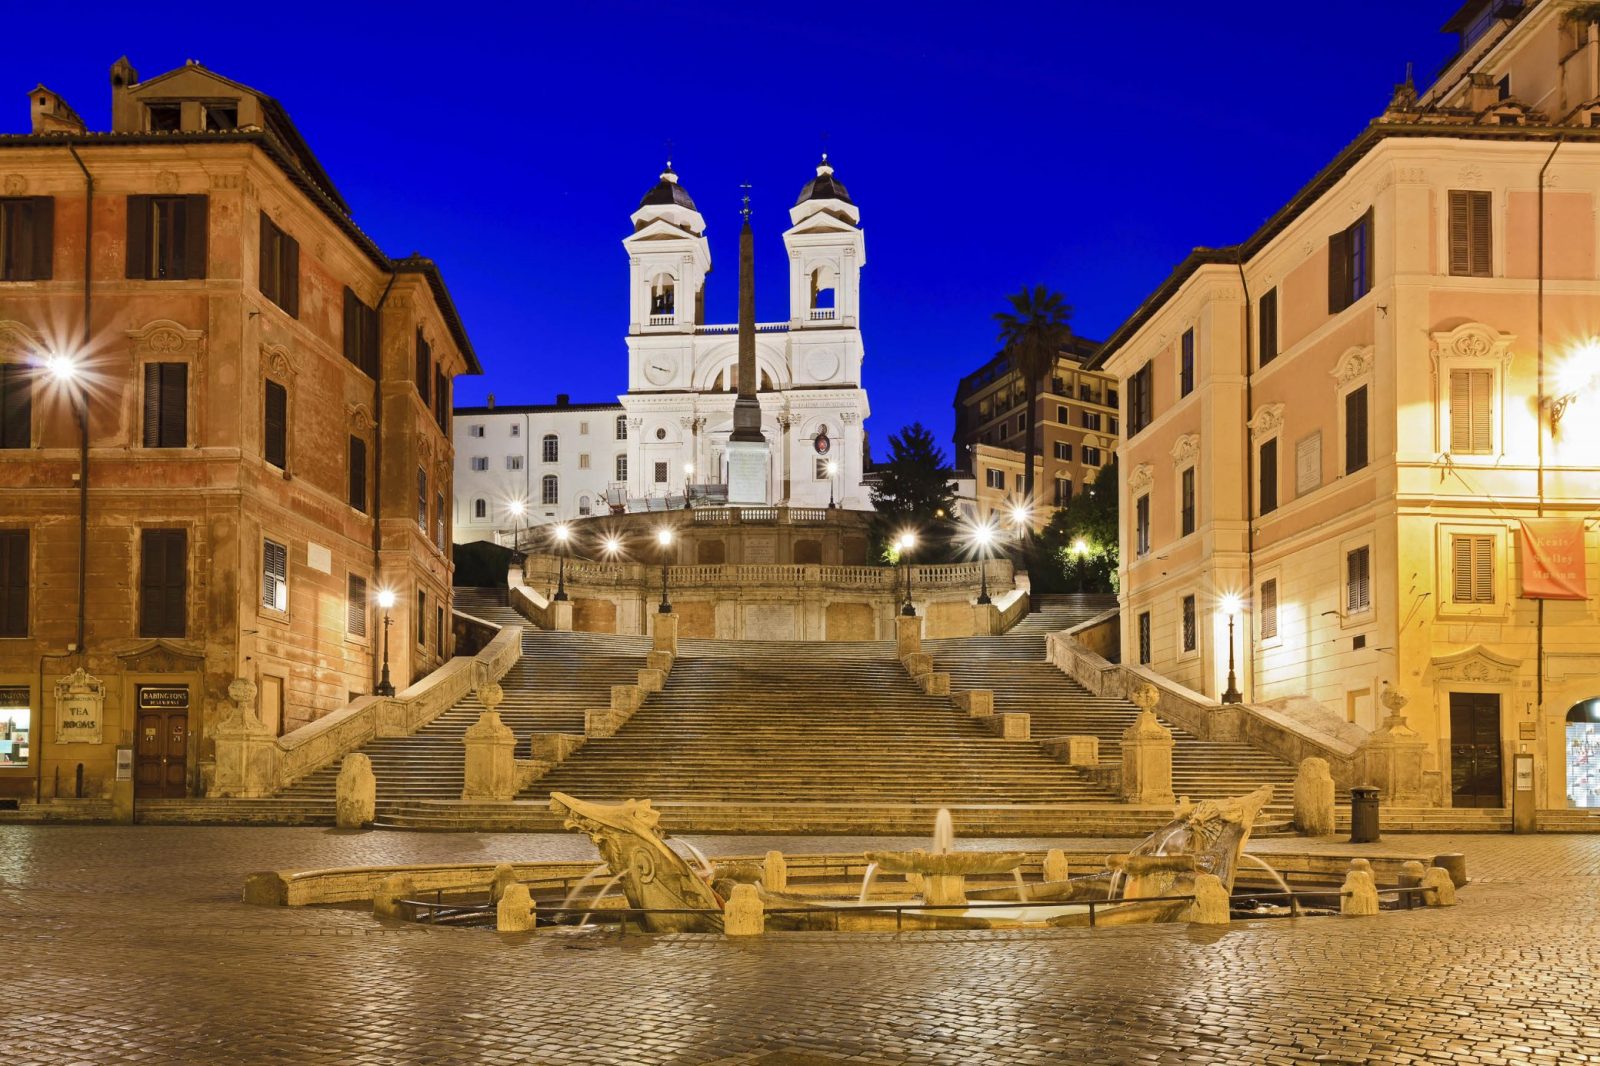 Spanische Treppe In Rom Italien  Franks Travelbox von Webcam Rom Spanische Treppe Photo